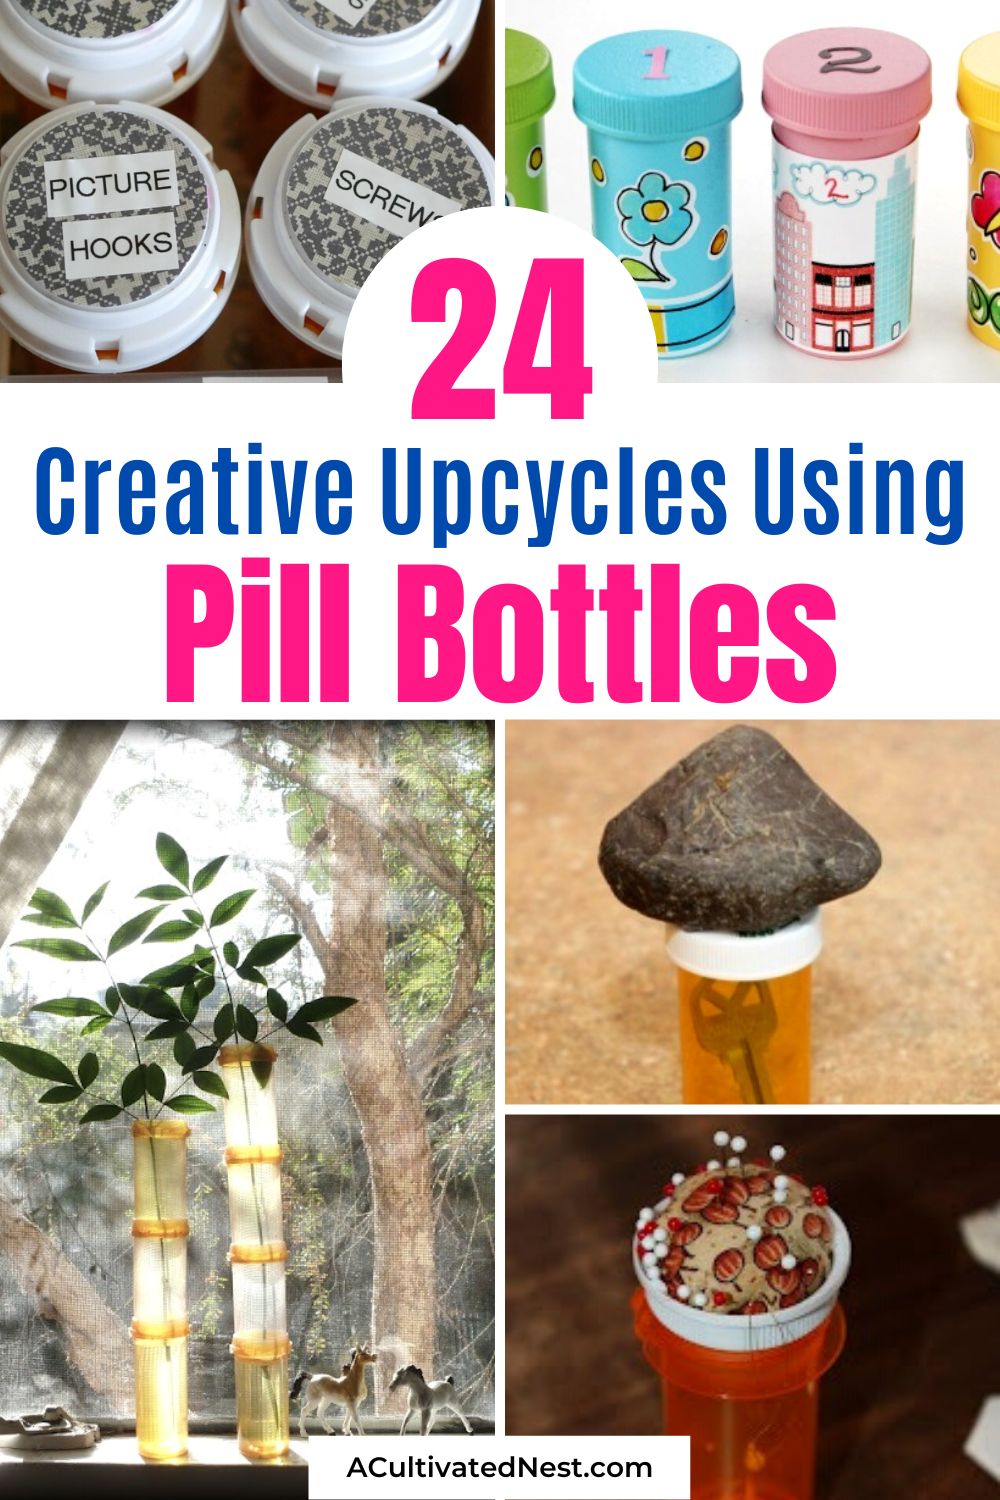 24 façons de recycler les flacons de pilules - Lorsque vous avez pris tous les médicaments dans un flacon de pilules, ne le jetez pas.  Au lieu de cela, faites-en bon usage avec l'une de ces nombreuses façons astucieuses de recycler les flacons de pilules !  |  Organisateurs de bricolage, organisation recyclée, #upcyclingProjects #upcycle #diyProjects #organizing #ACultivatedNest